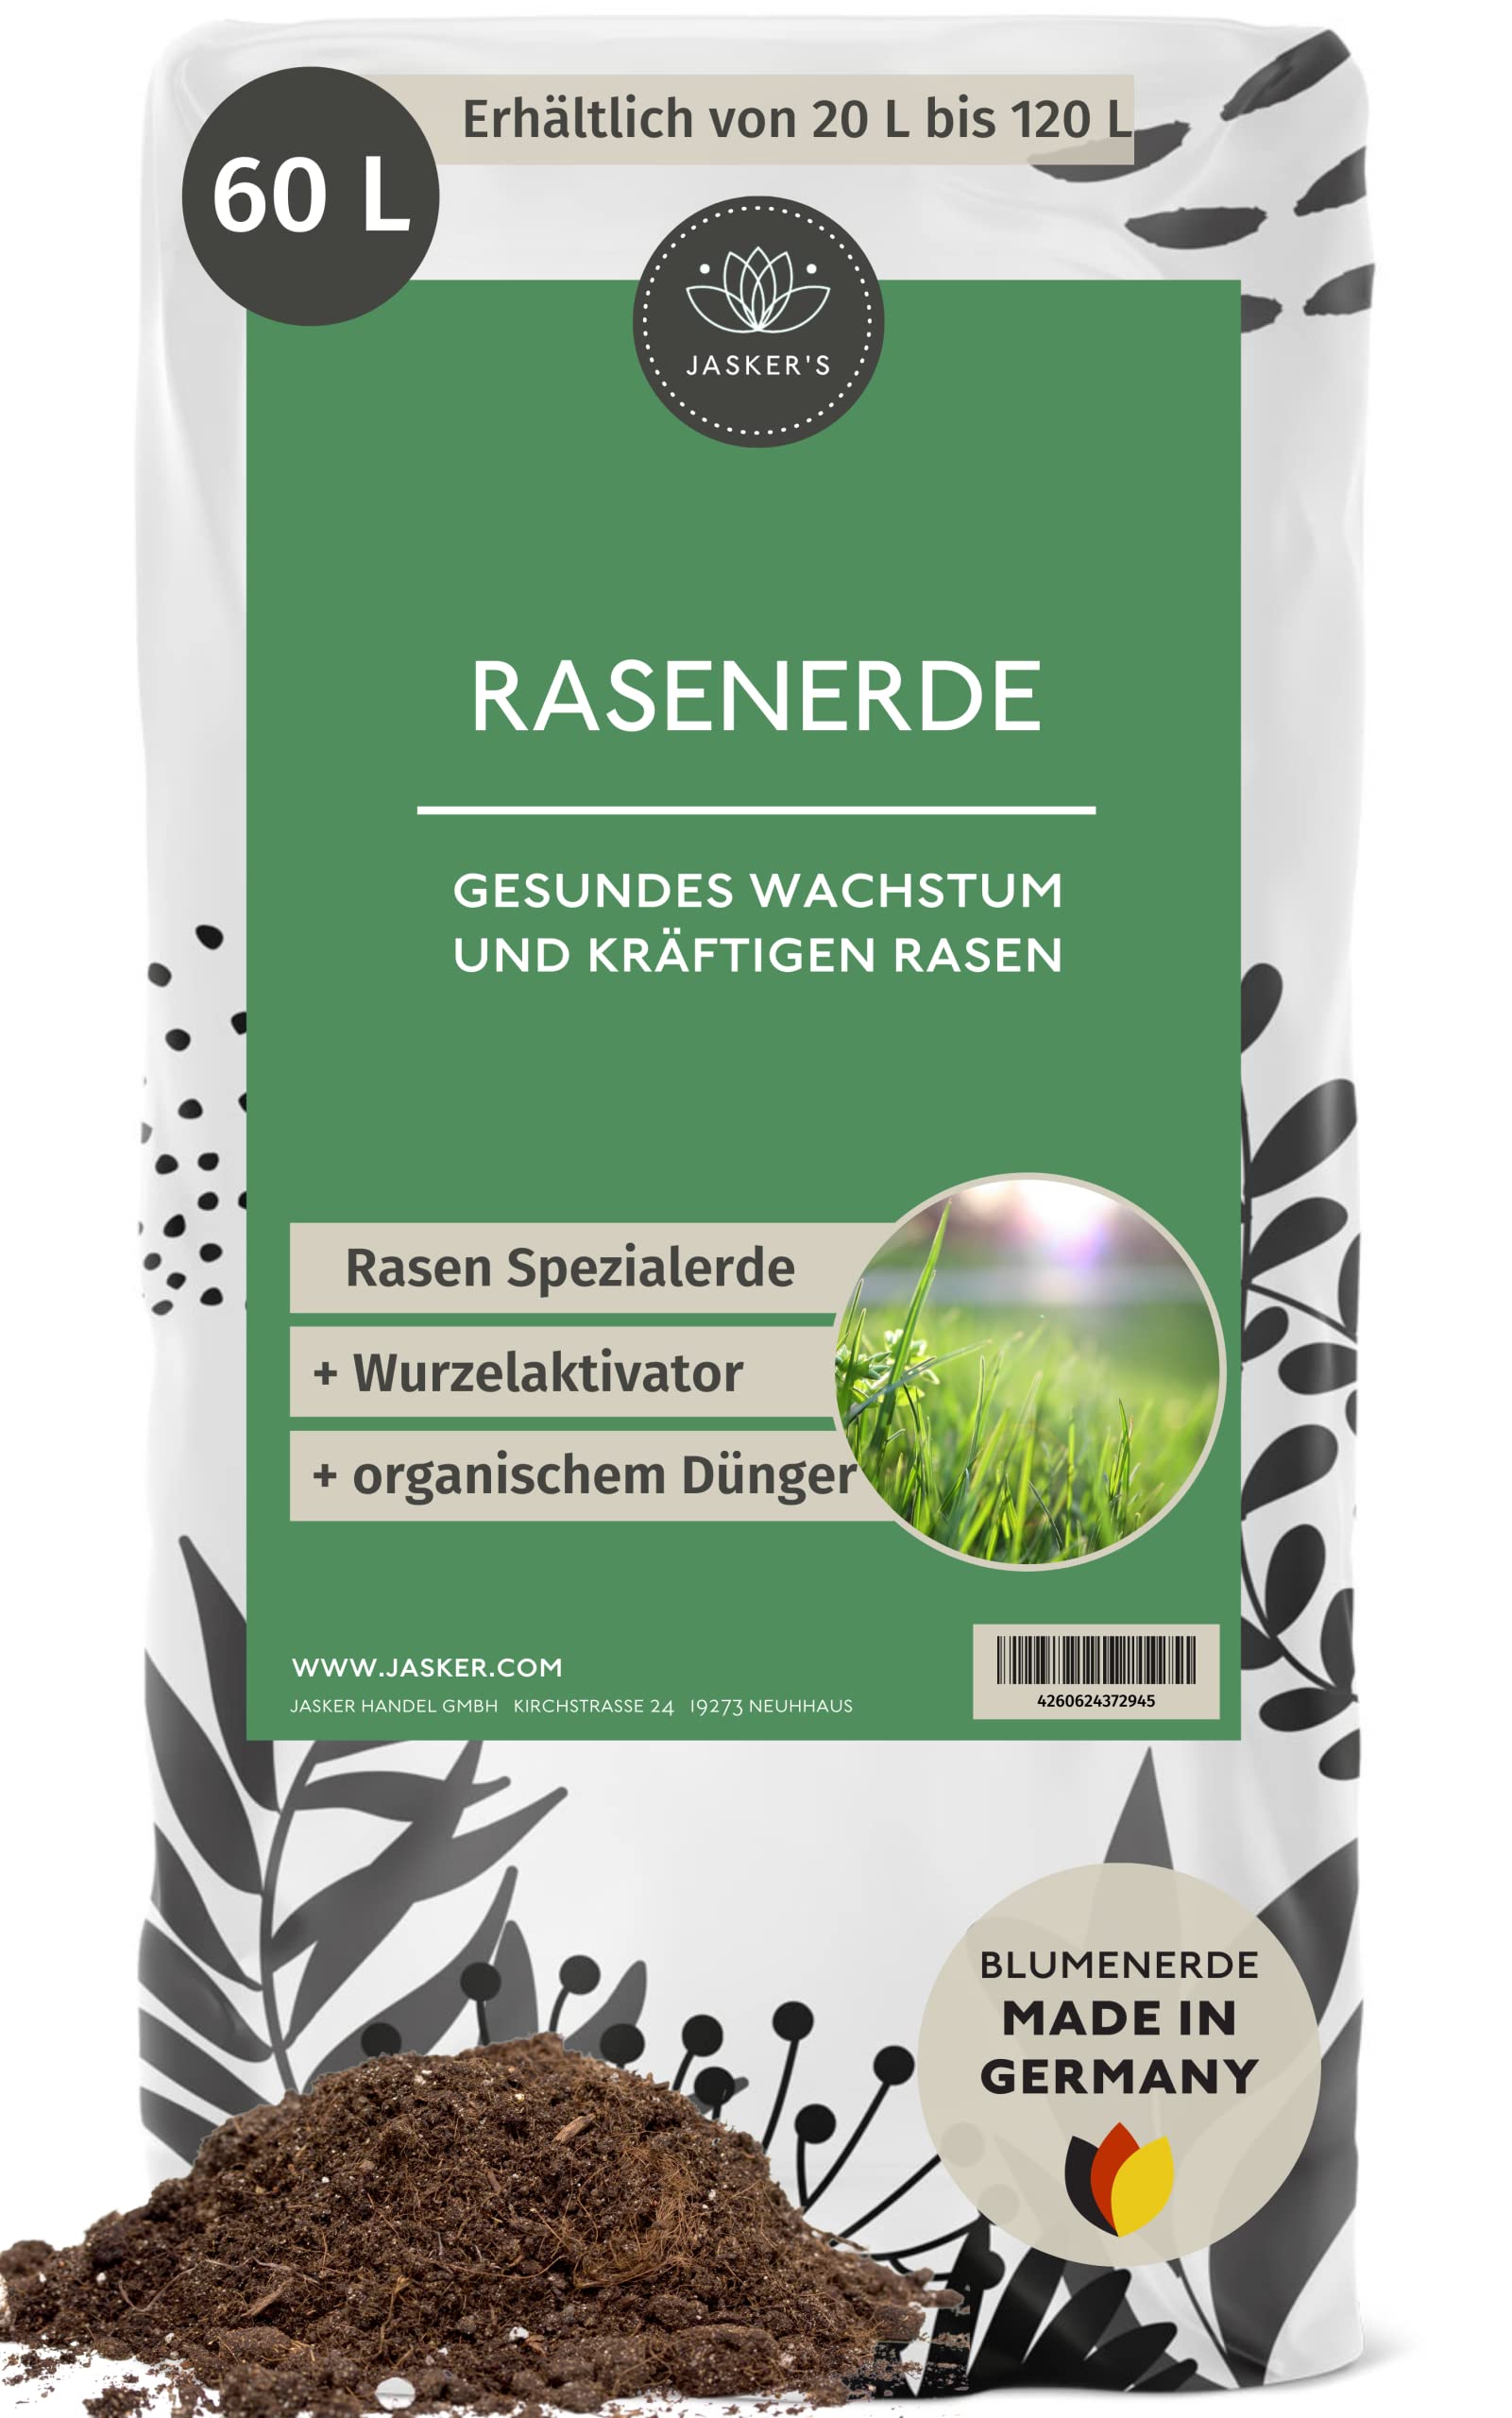 Rasenerde 60 L - 100% Nachhaltig mit Dünger - Rasen-Erde - Rasensubstrat Mischung- Perfekter Mutterboden für Rasen und Garten - Rasenhumus - Erde für Rasen